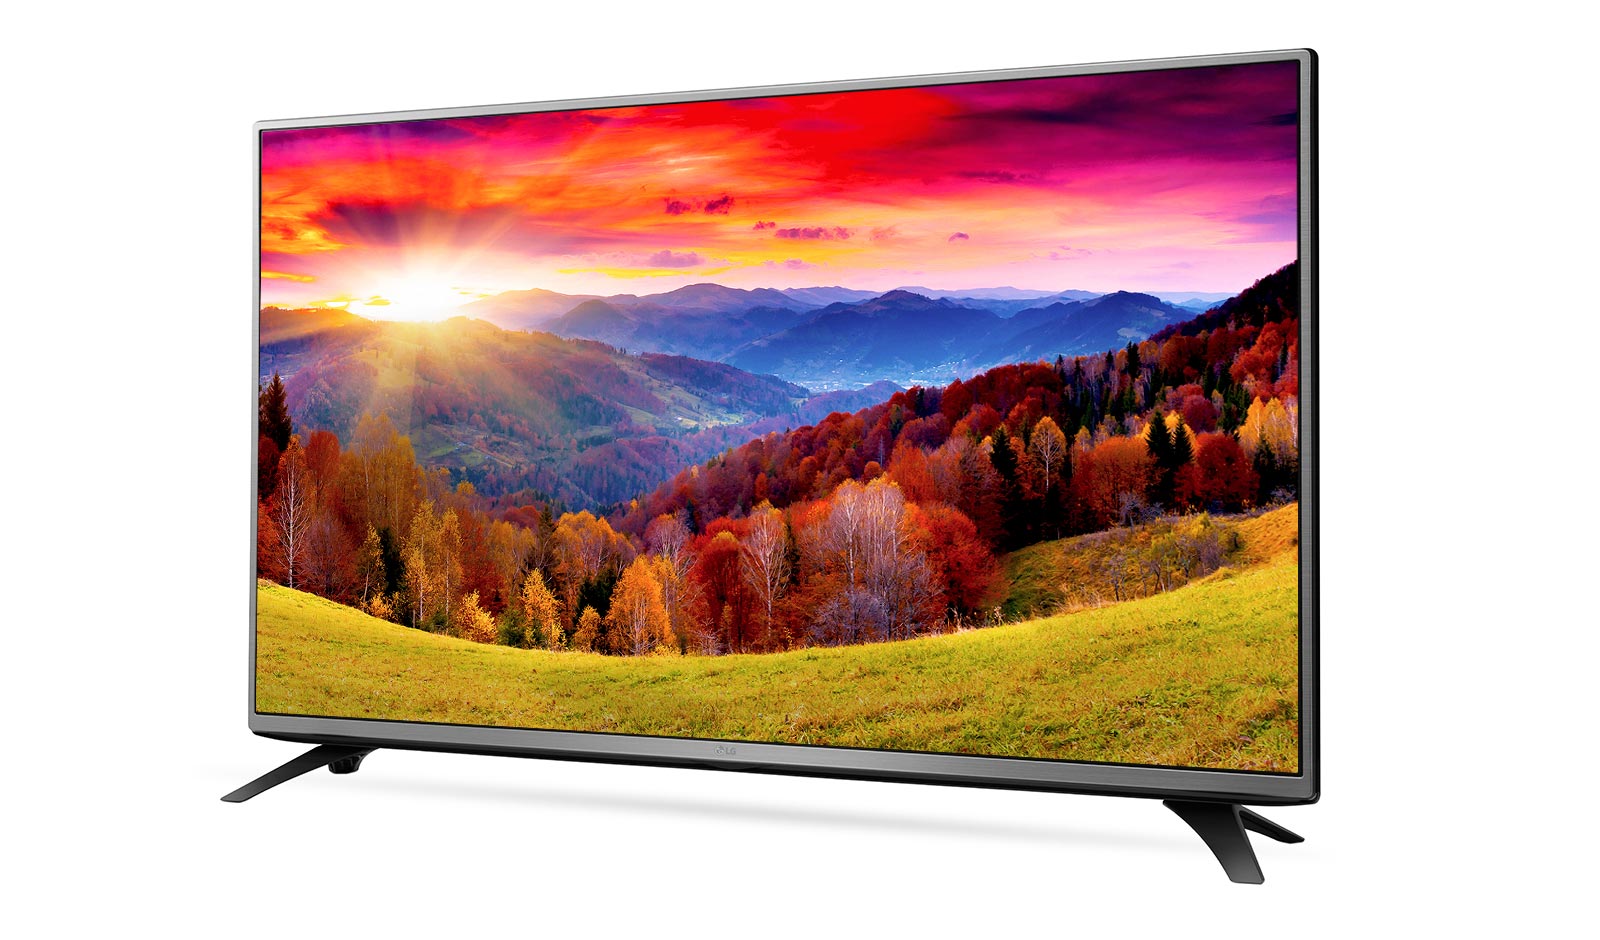 Телевизор купить минск цена. LG 49lh570v. LG 32lh595u. Телевизор LG 43lh543v 43". Телевизор LG 43lh590v.